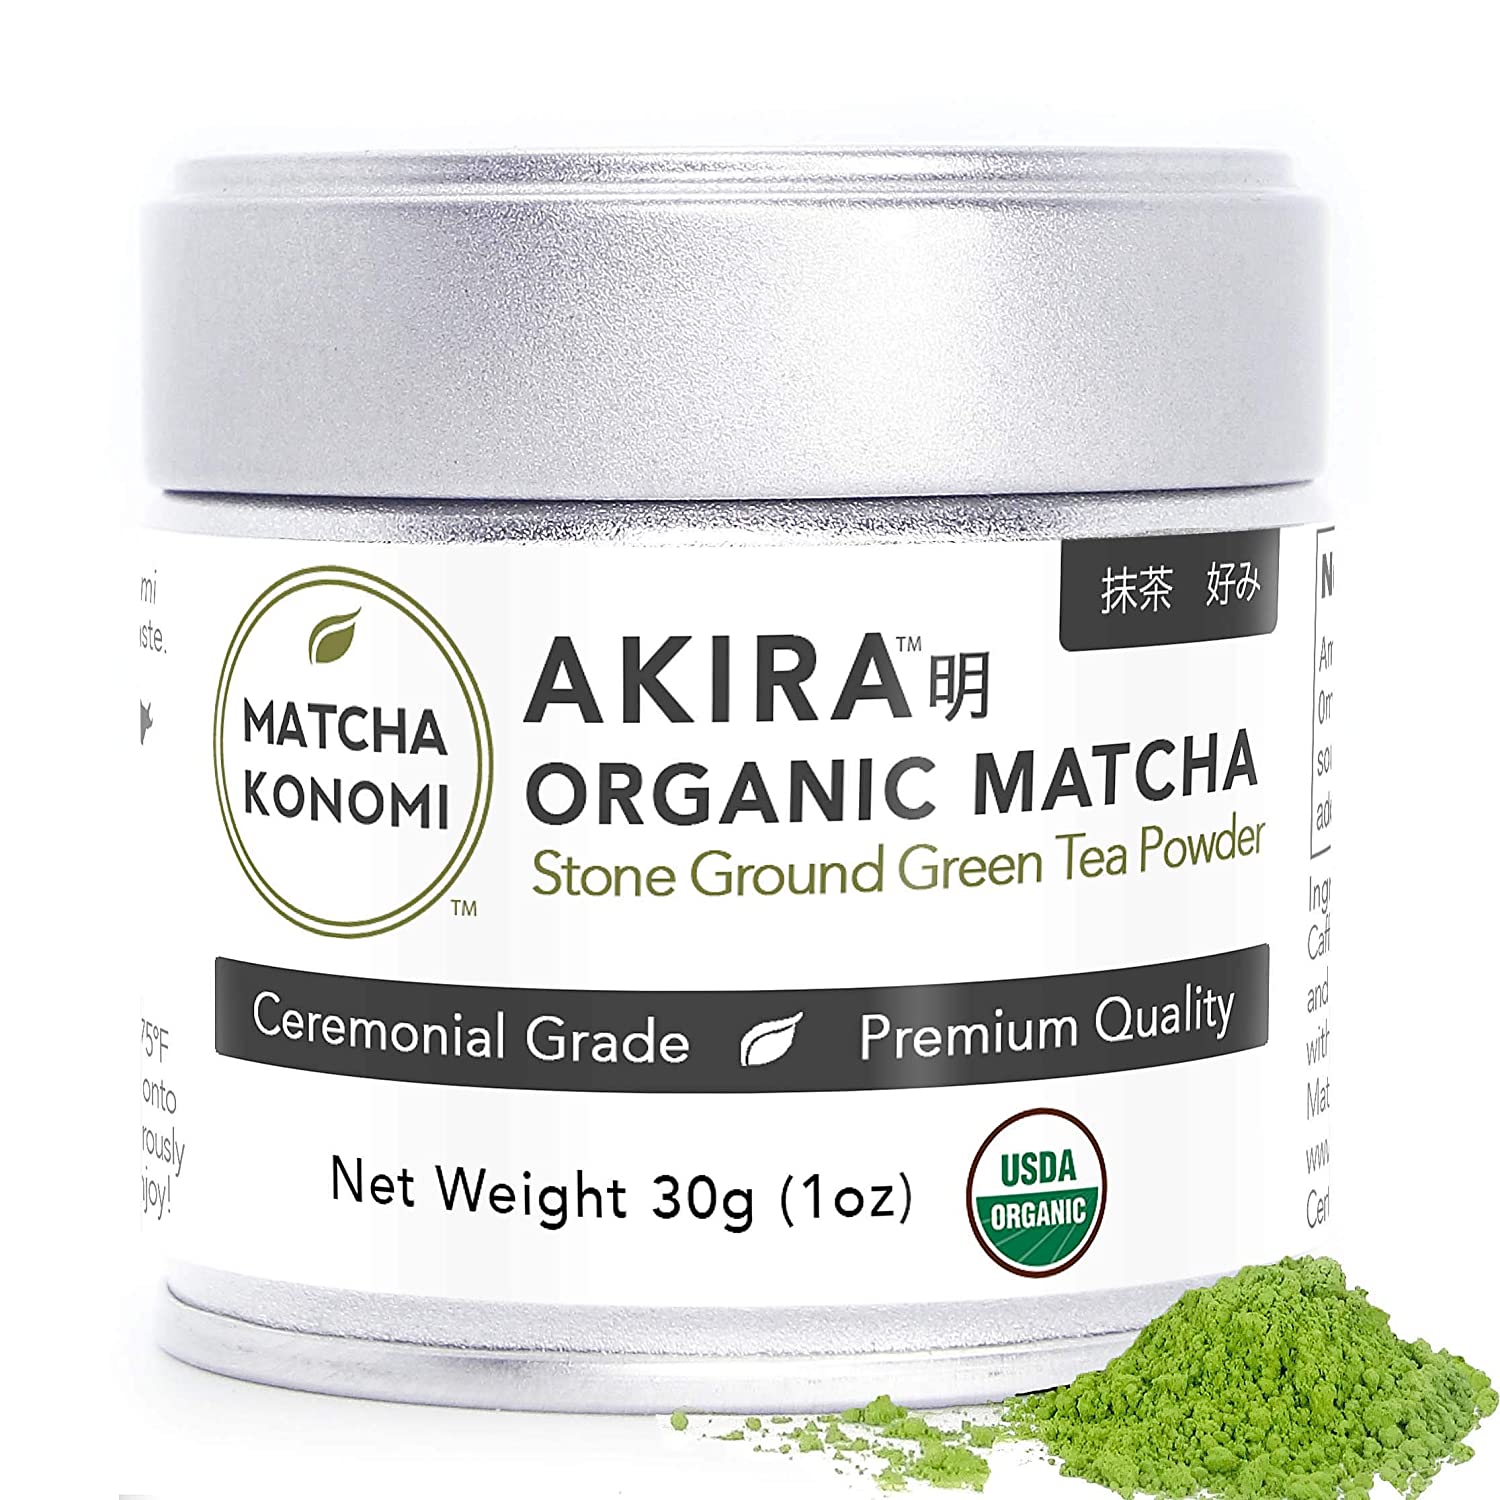 <strong>2. Akira Matcha Green Tea Powder</strong>